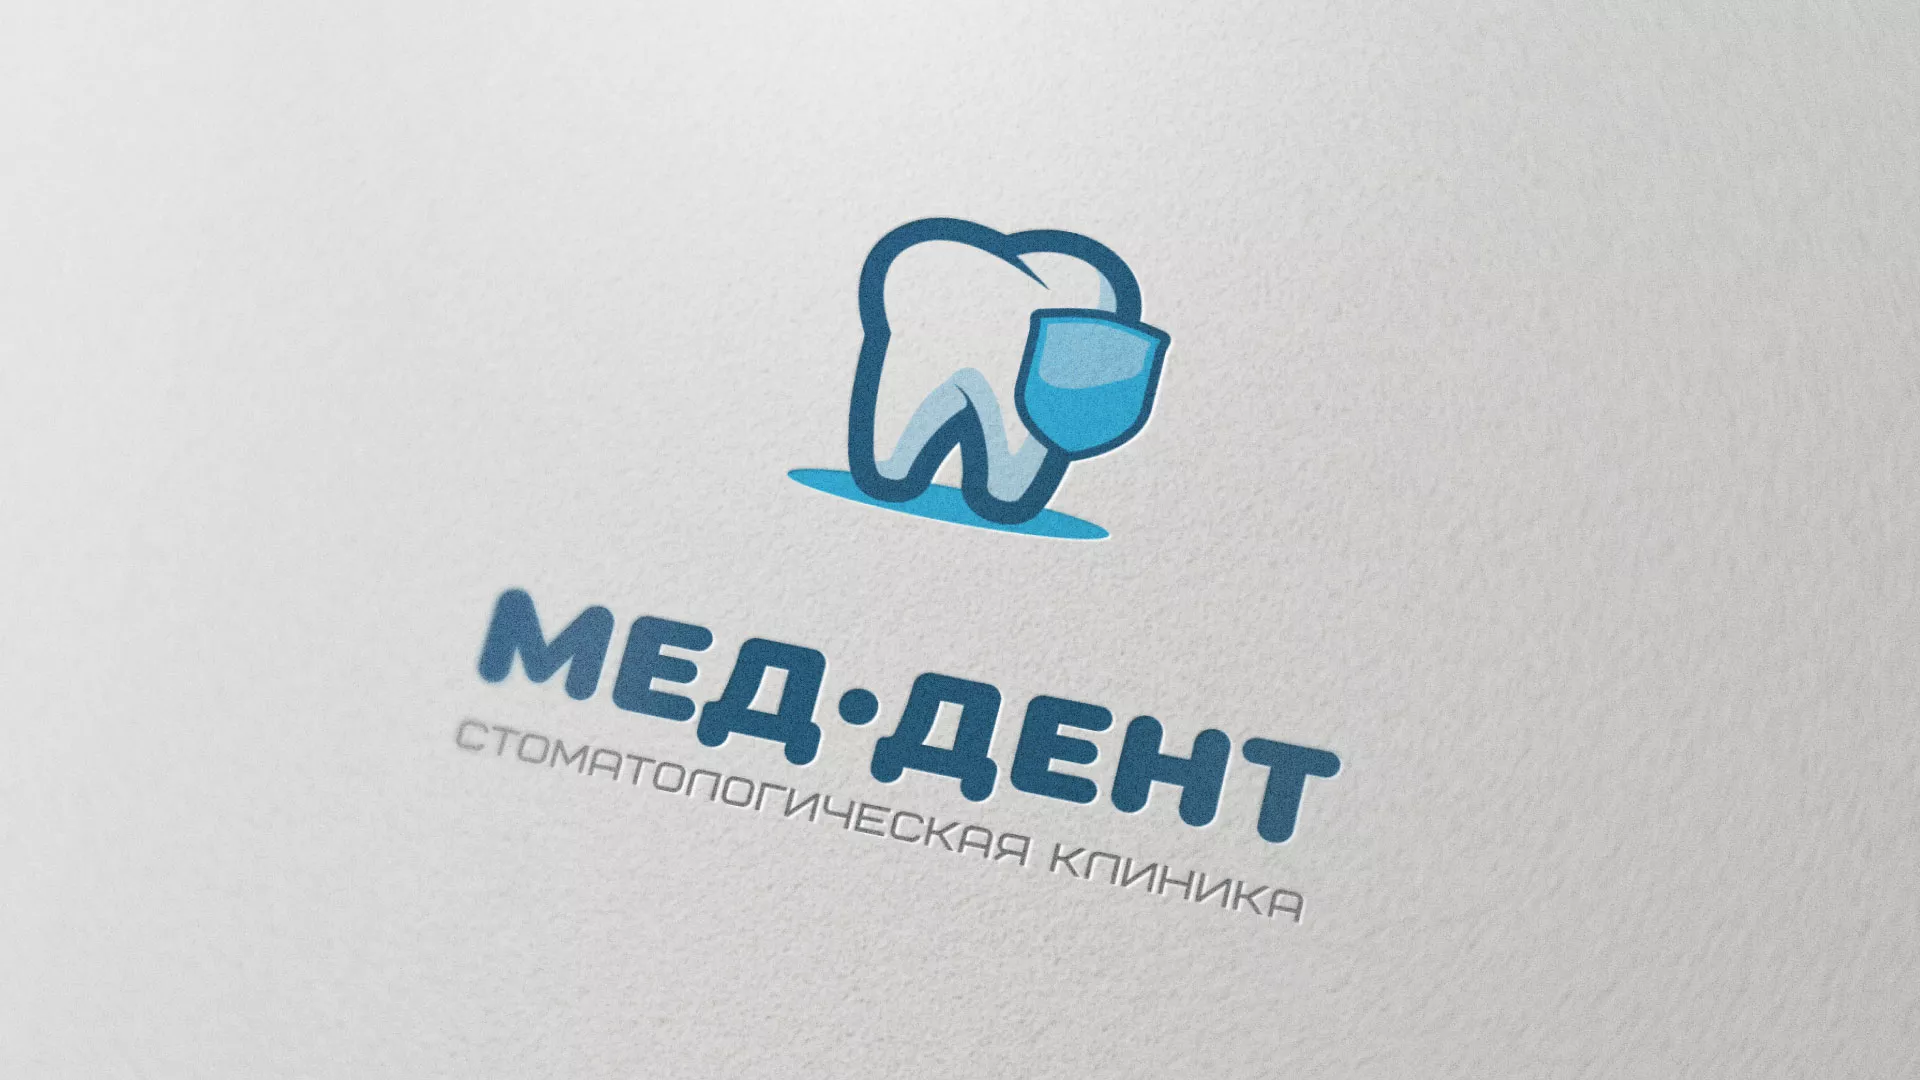 Разработка логотипа стоматологической клиники «МЕД-ДЕНТ» в Кольчугино